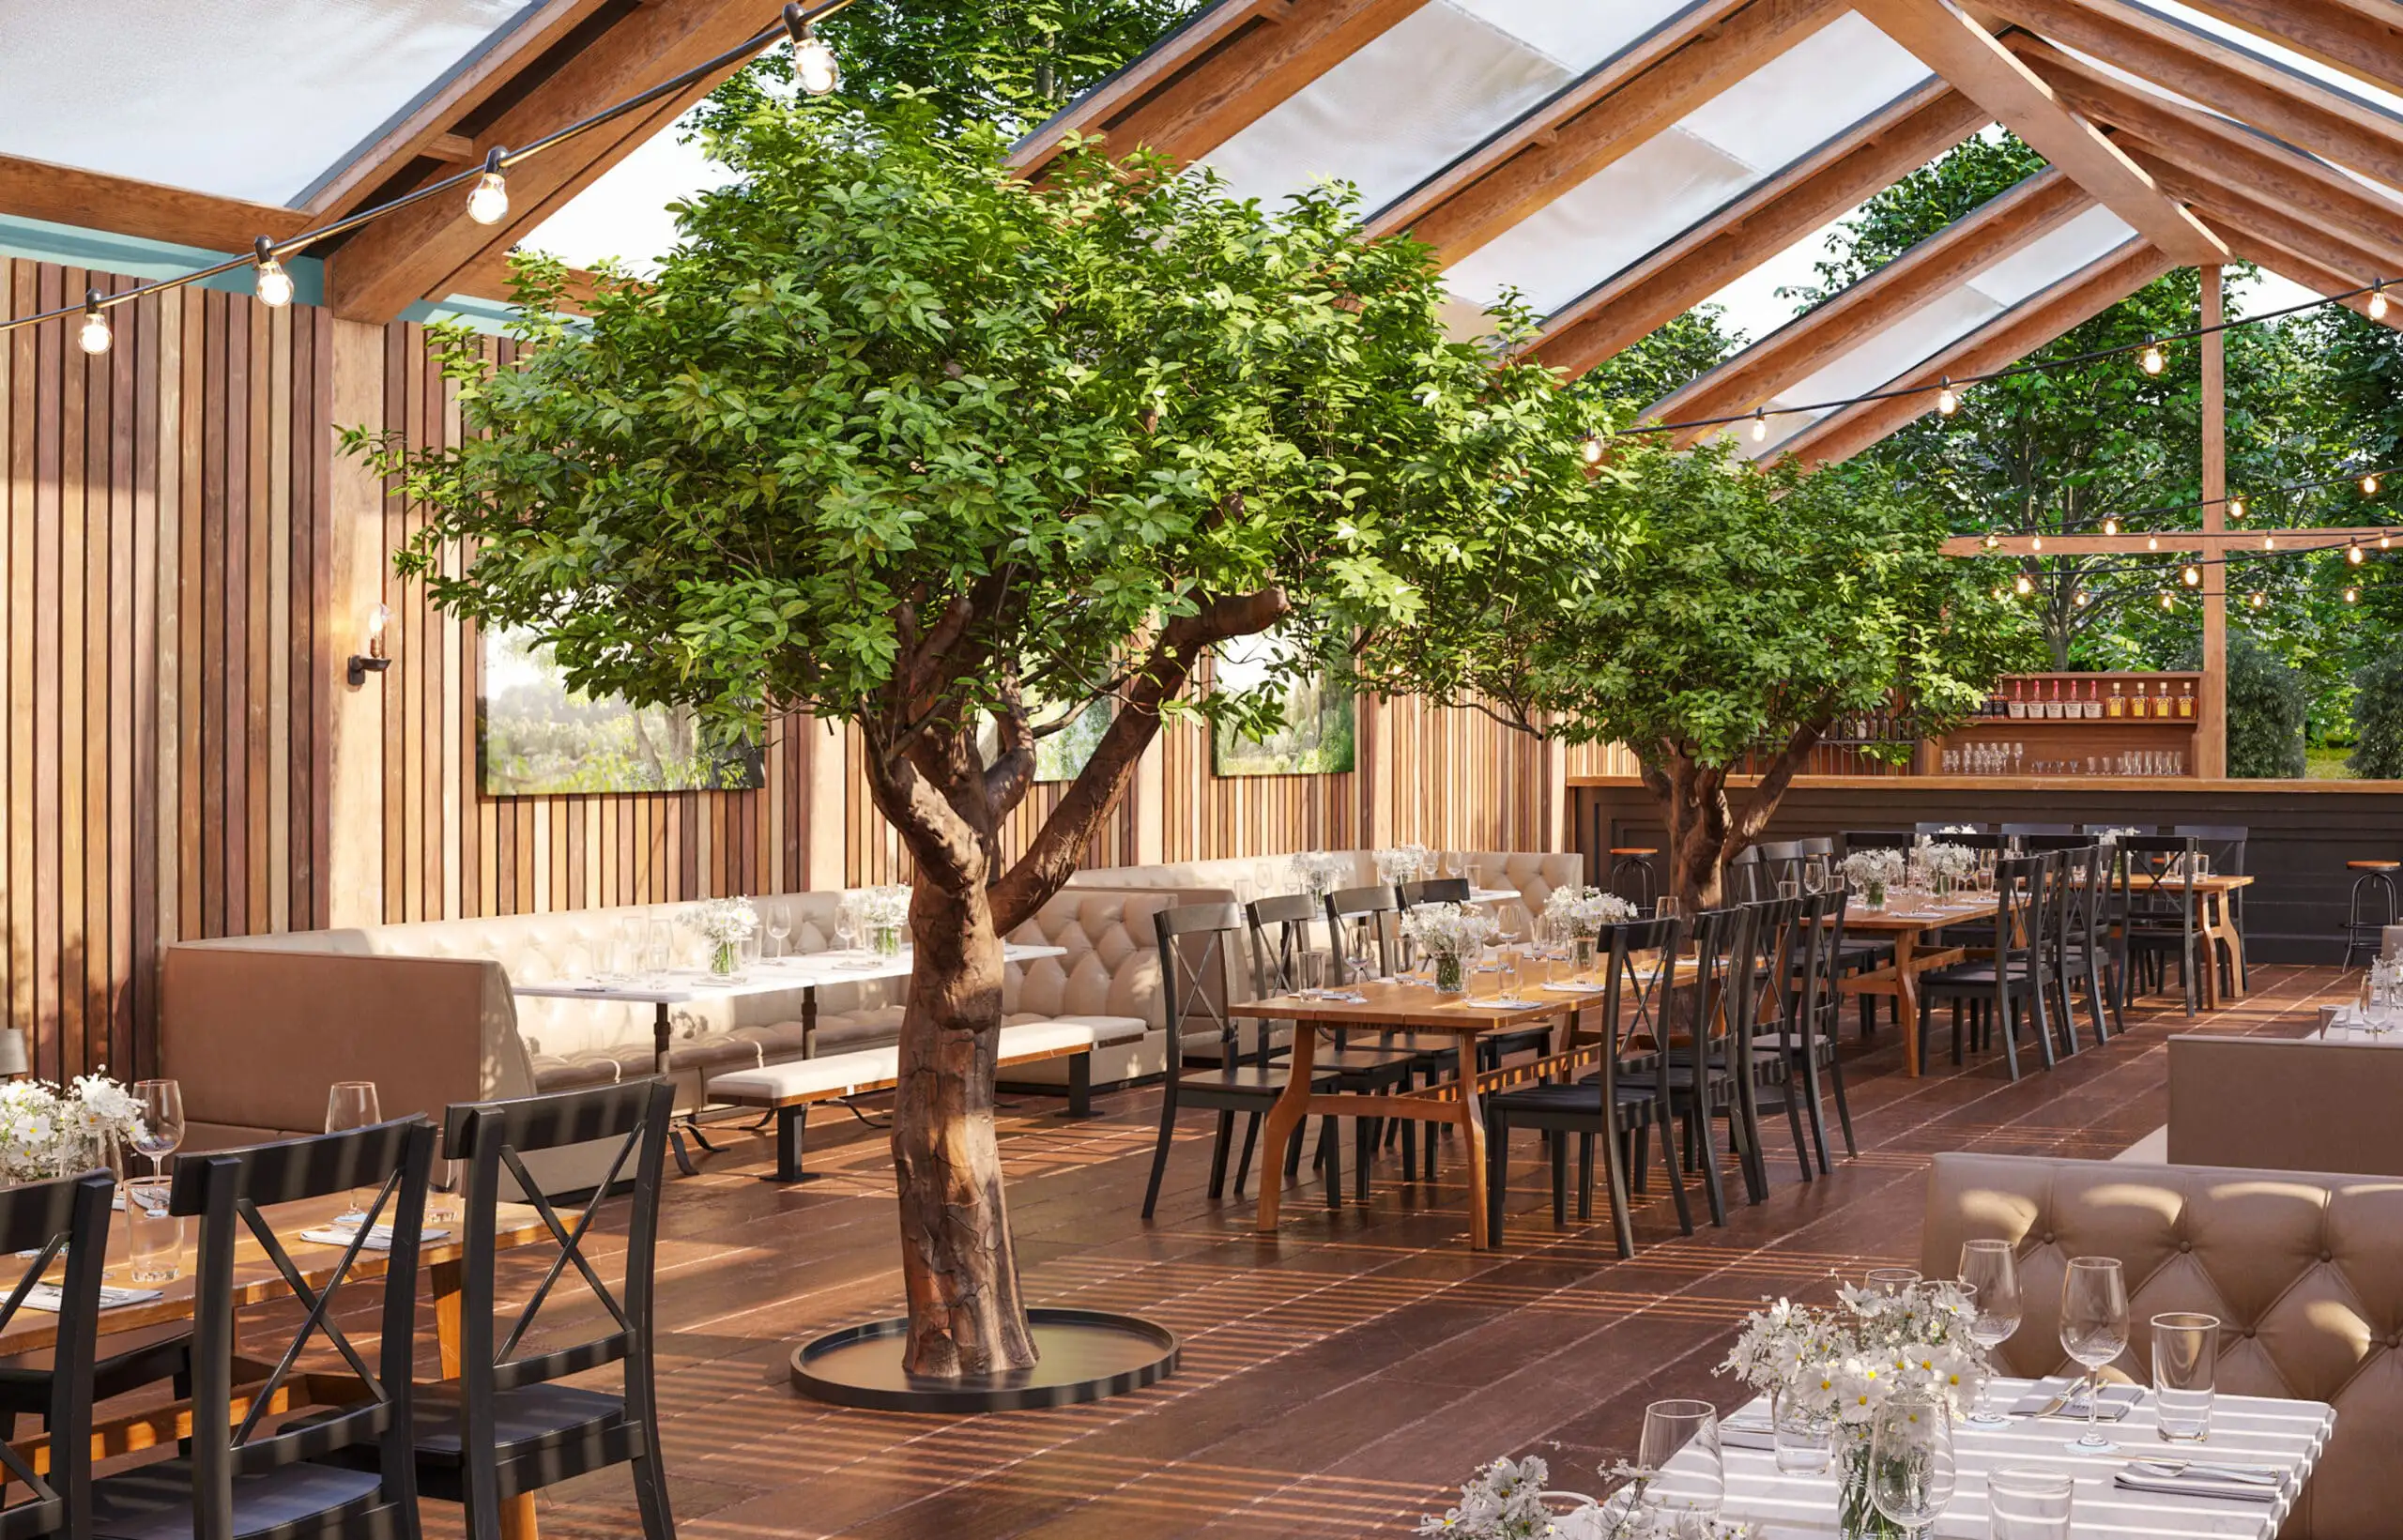 Restaurant mit künstlichen Bäumen